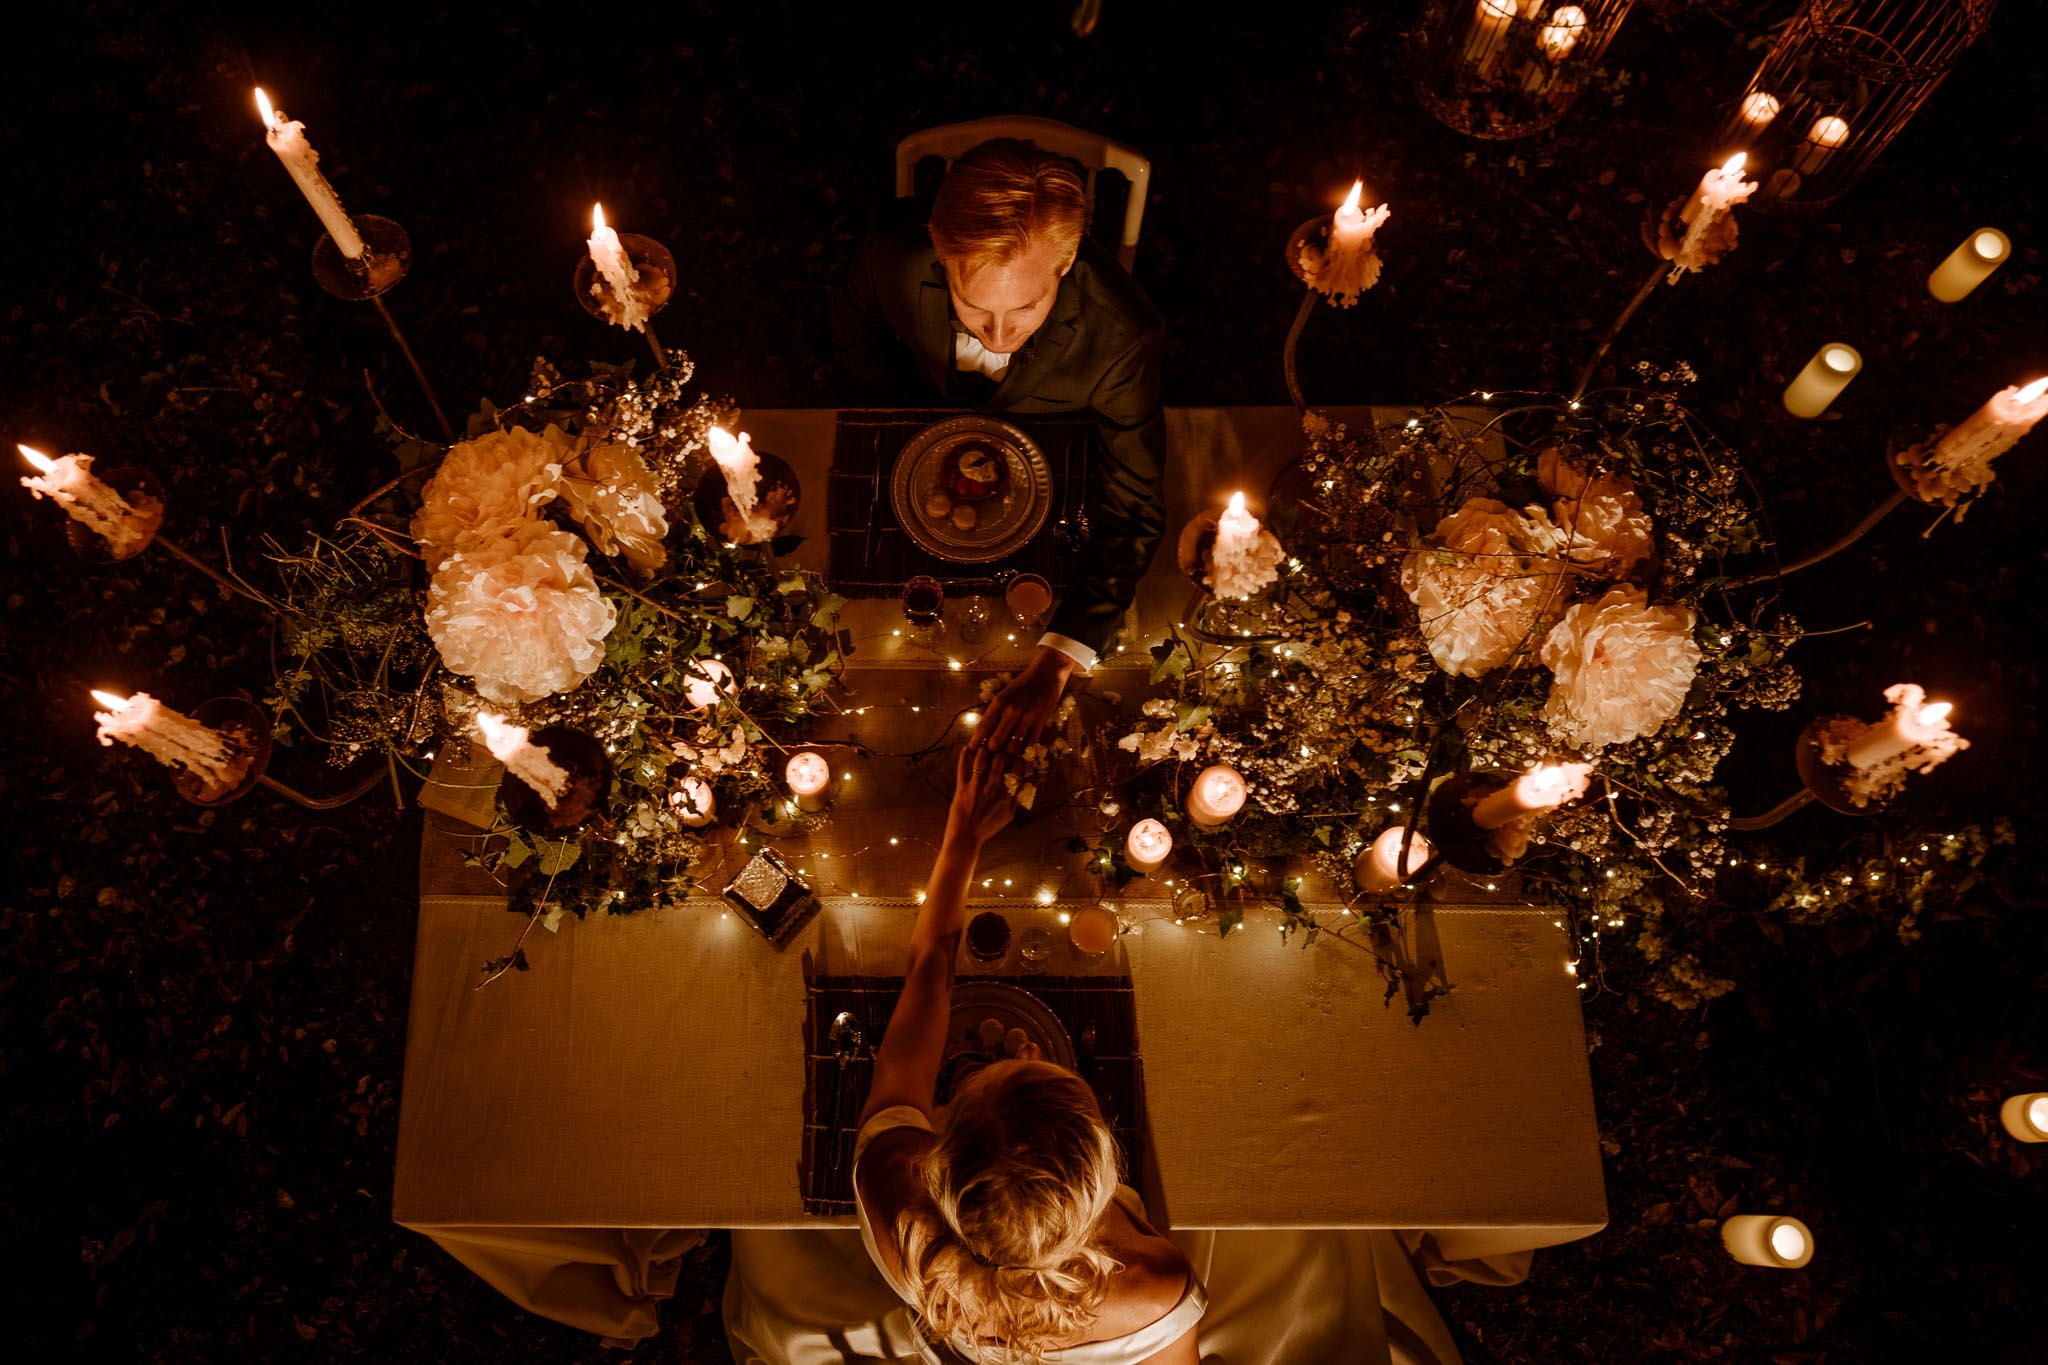 photos d’une séance couple mise en scène après mariage, prises de nuit, lors d’un repas au sein d’un décor inspiré du film Twilight, au Château de Vair à Anetz par Geoffrey Arnoldy photographe